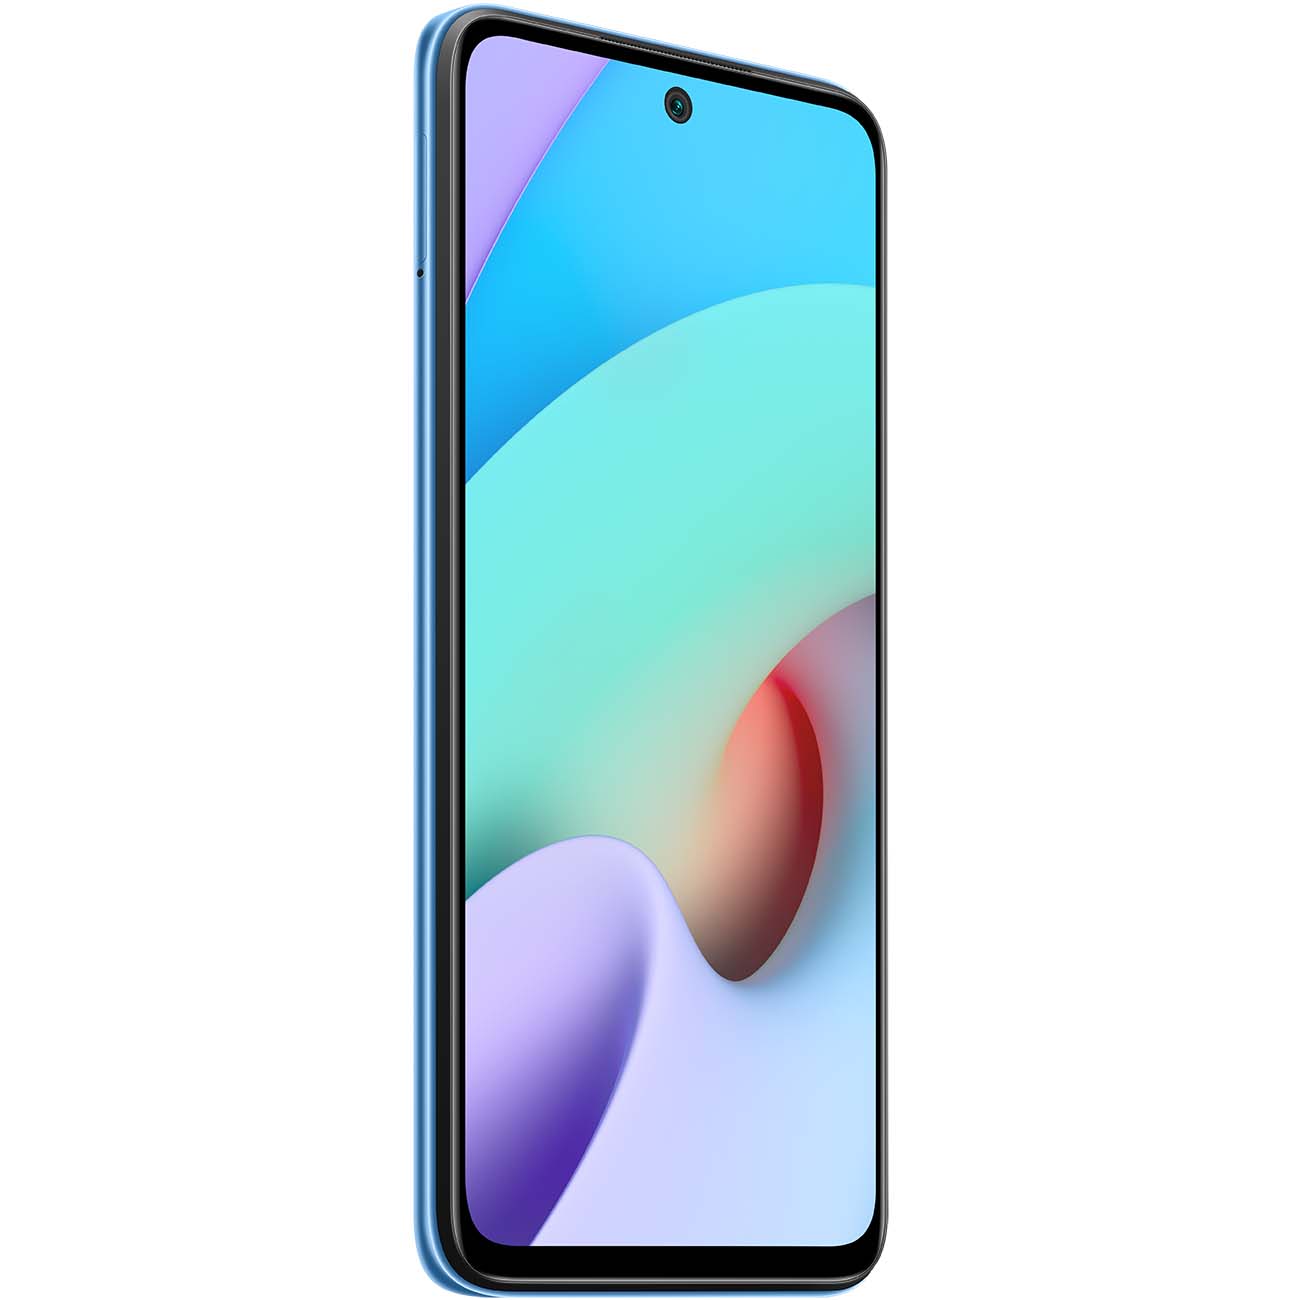 Купить смартфон xiaomi redmi 10 4+64gb sea blue Смартфоны в официальном магазине Apple, Samsung, Xiaomi. iPixel.ru Купить, заказ, кредит, рассрочка, отзывы,  характеристики, цена,  фотографии, в подарок.